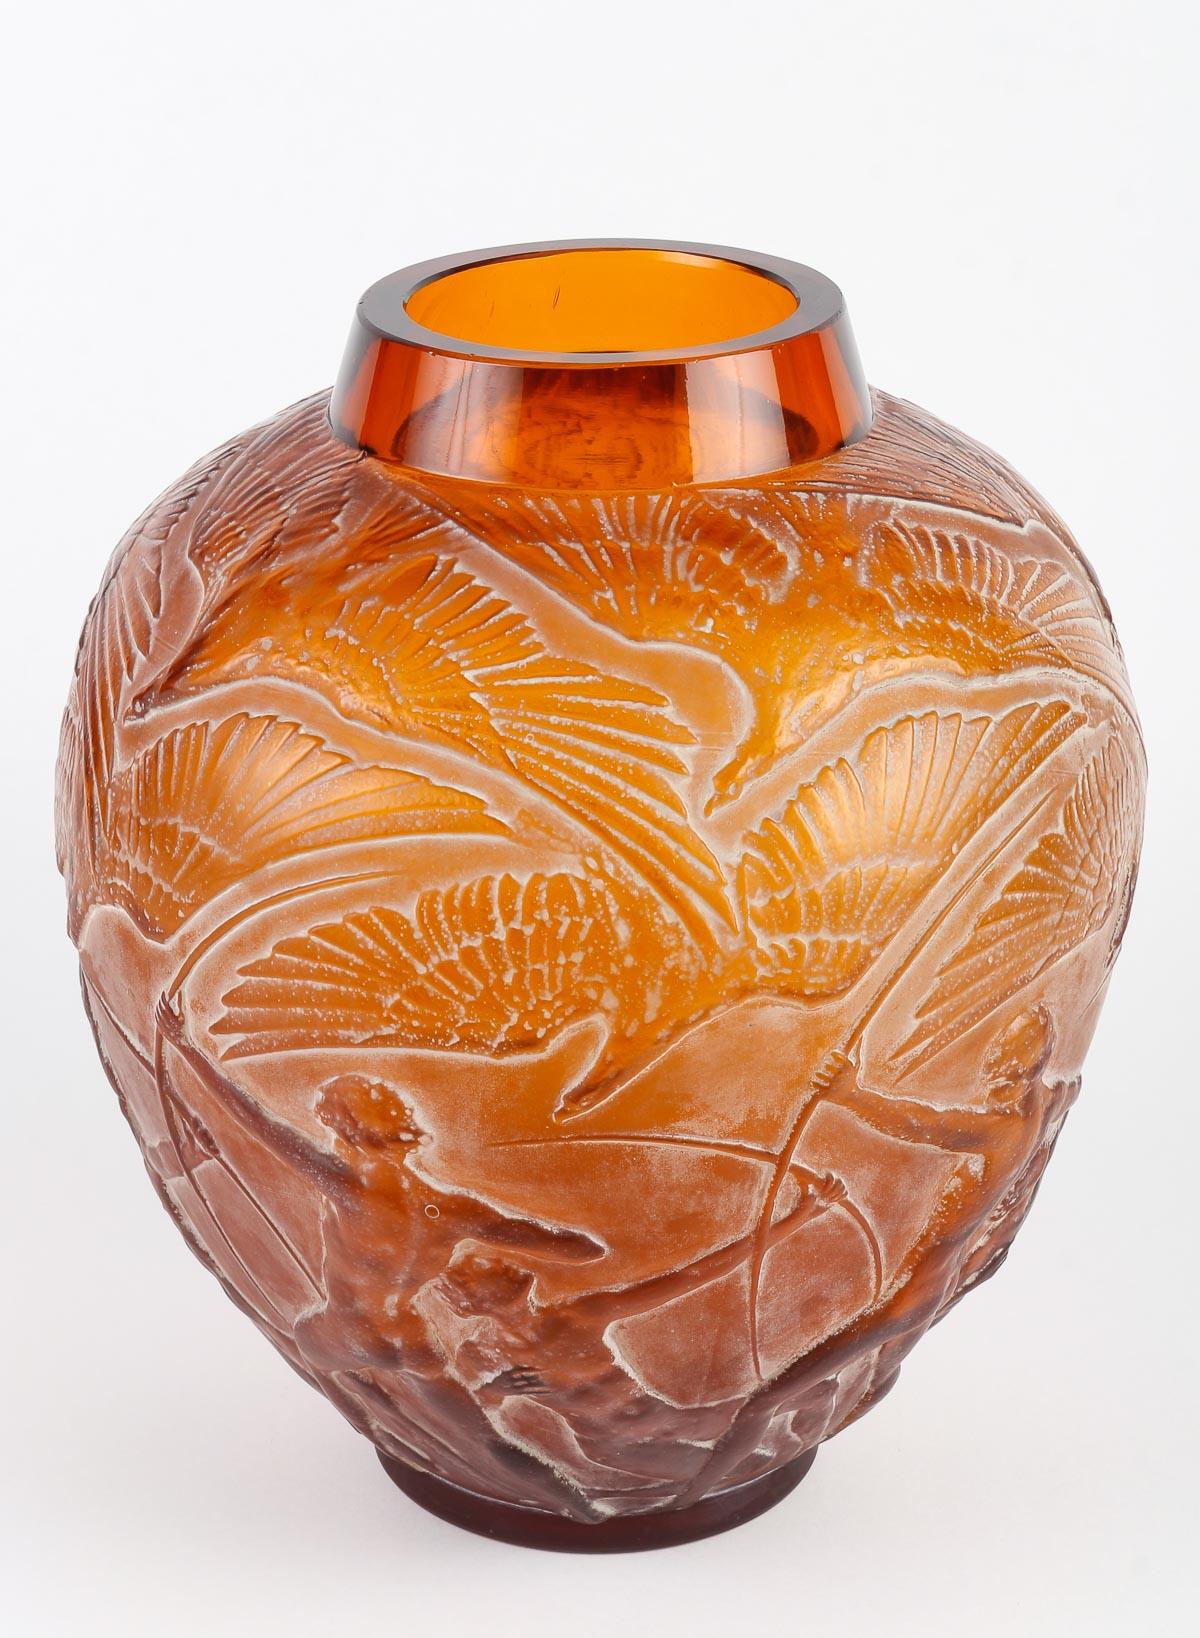 French 1921 Rene Lalique Vase Archers Vase Orangy Amber Glass White Patina